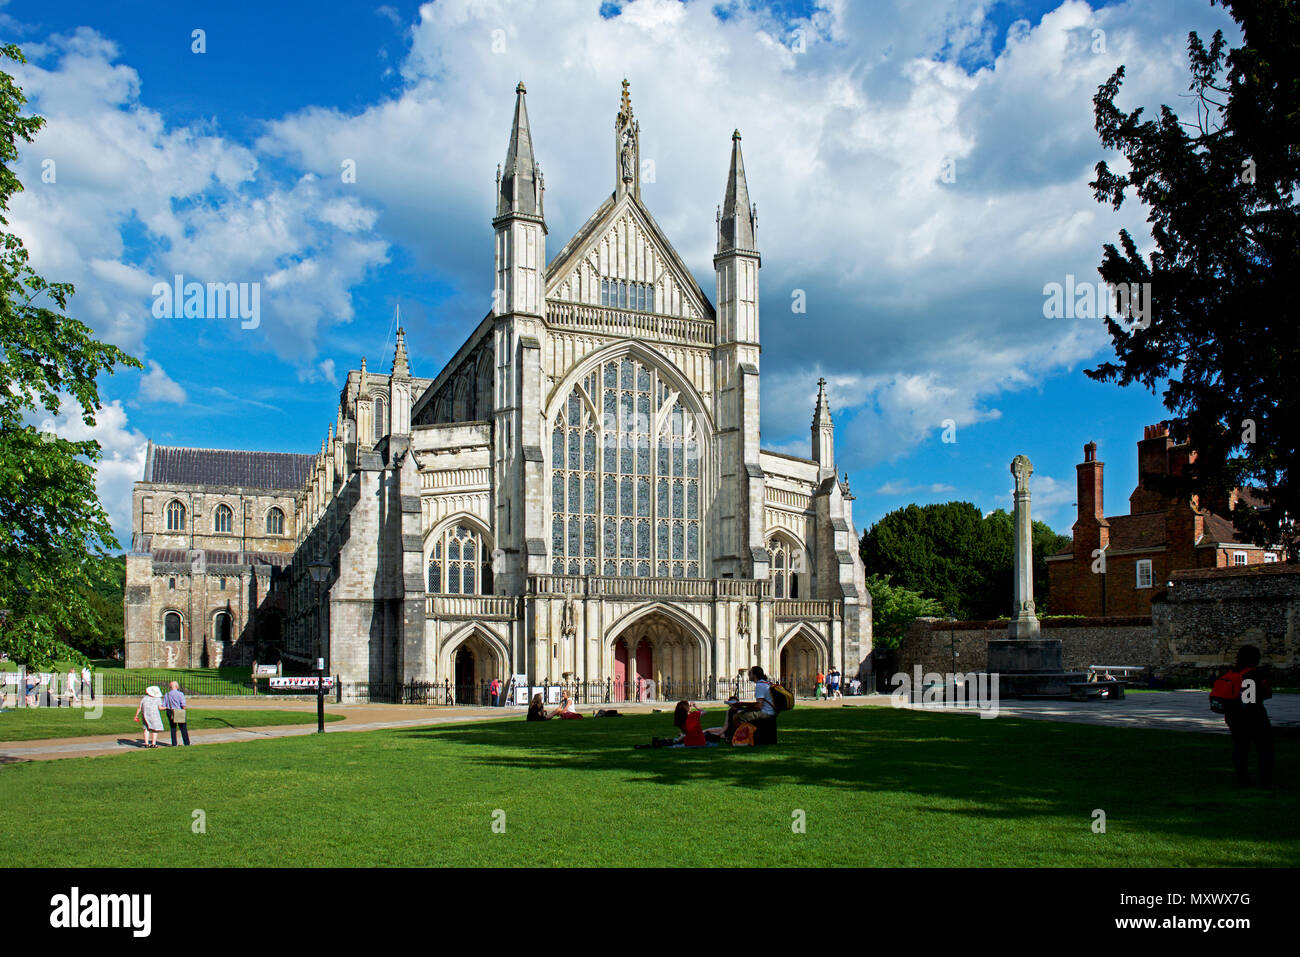 La cathédrale de Winchester, Hampshire, Angleterre, Royaume-Uni Banque D'Images